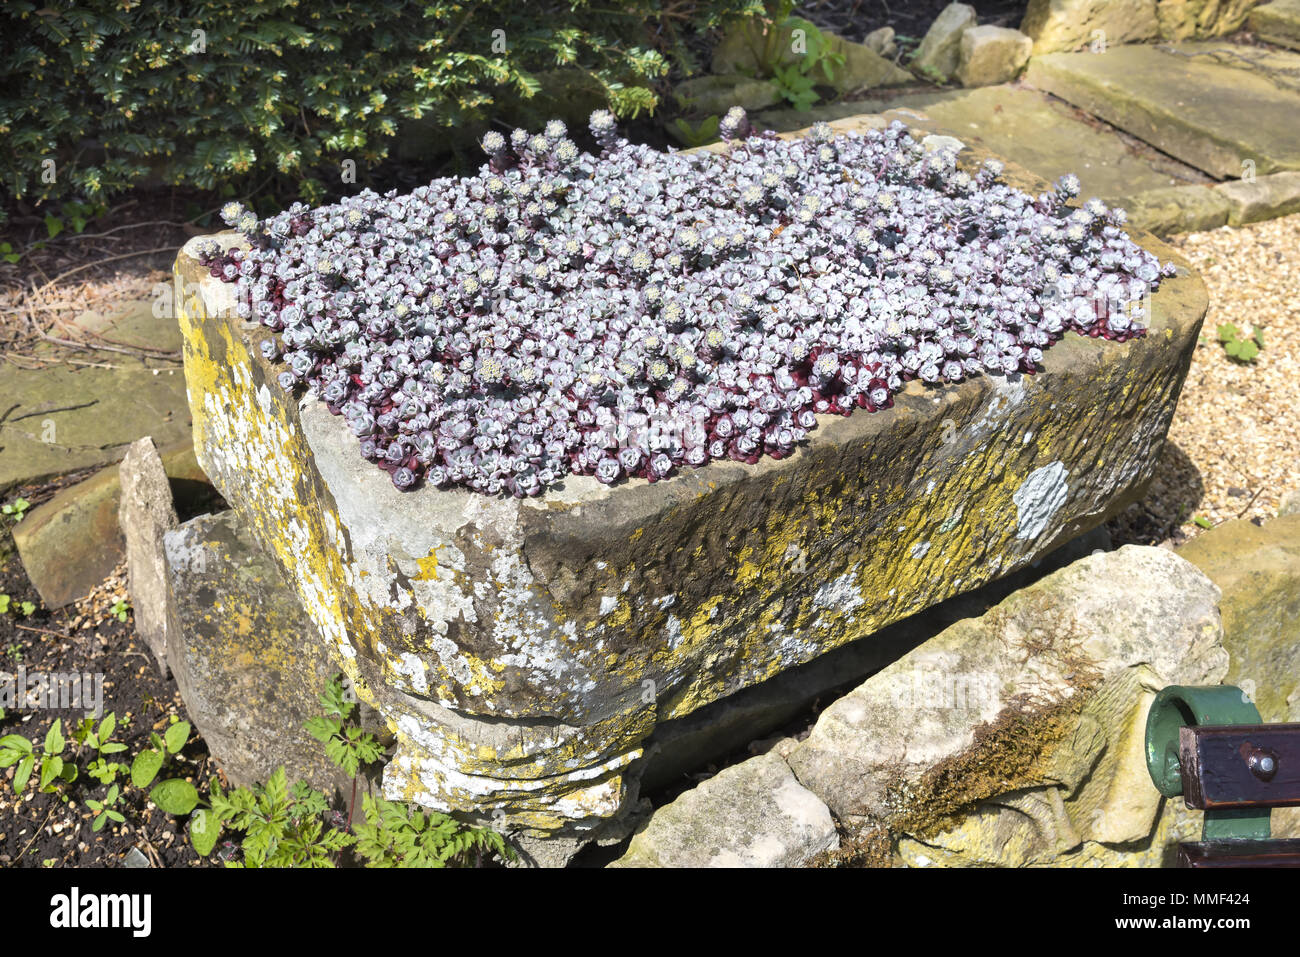 Piccola pietra attraverso il contenitore pieno di fioritura viola sassifraga piante alpine. Foto Stock